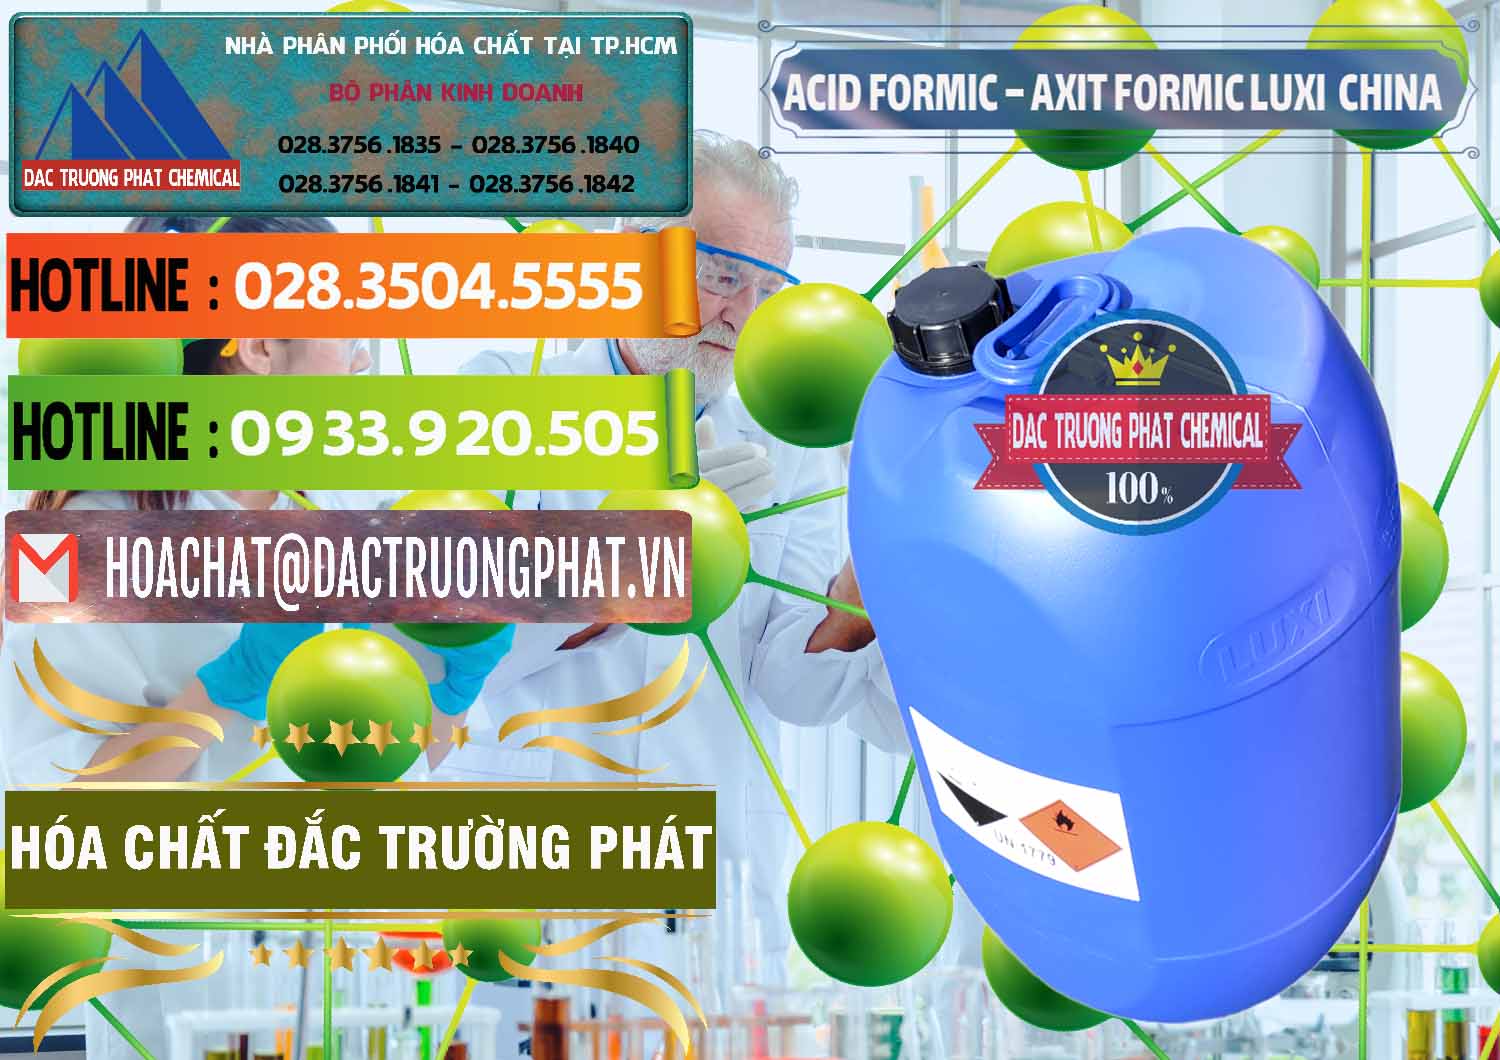 Công ty kinh doanh & bán Acid Formic - Axit Formic Luxi Trung Quốc China - 0029 - Công ty cung cấp - phân phối hóa chất tại TP.HCM - cungcaphoachat.com.vn